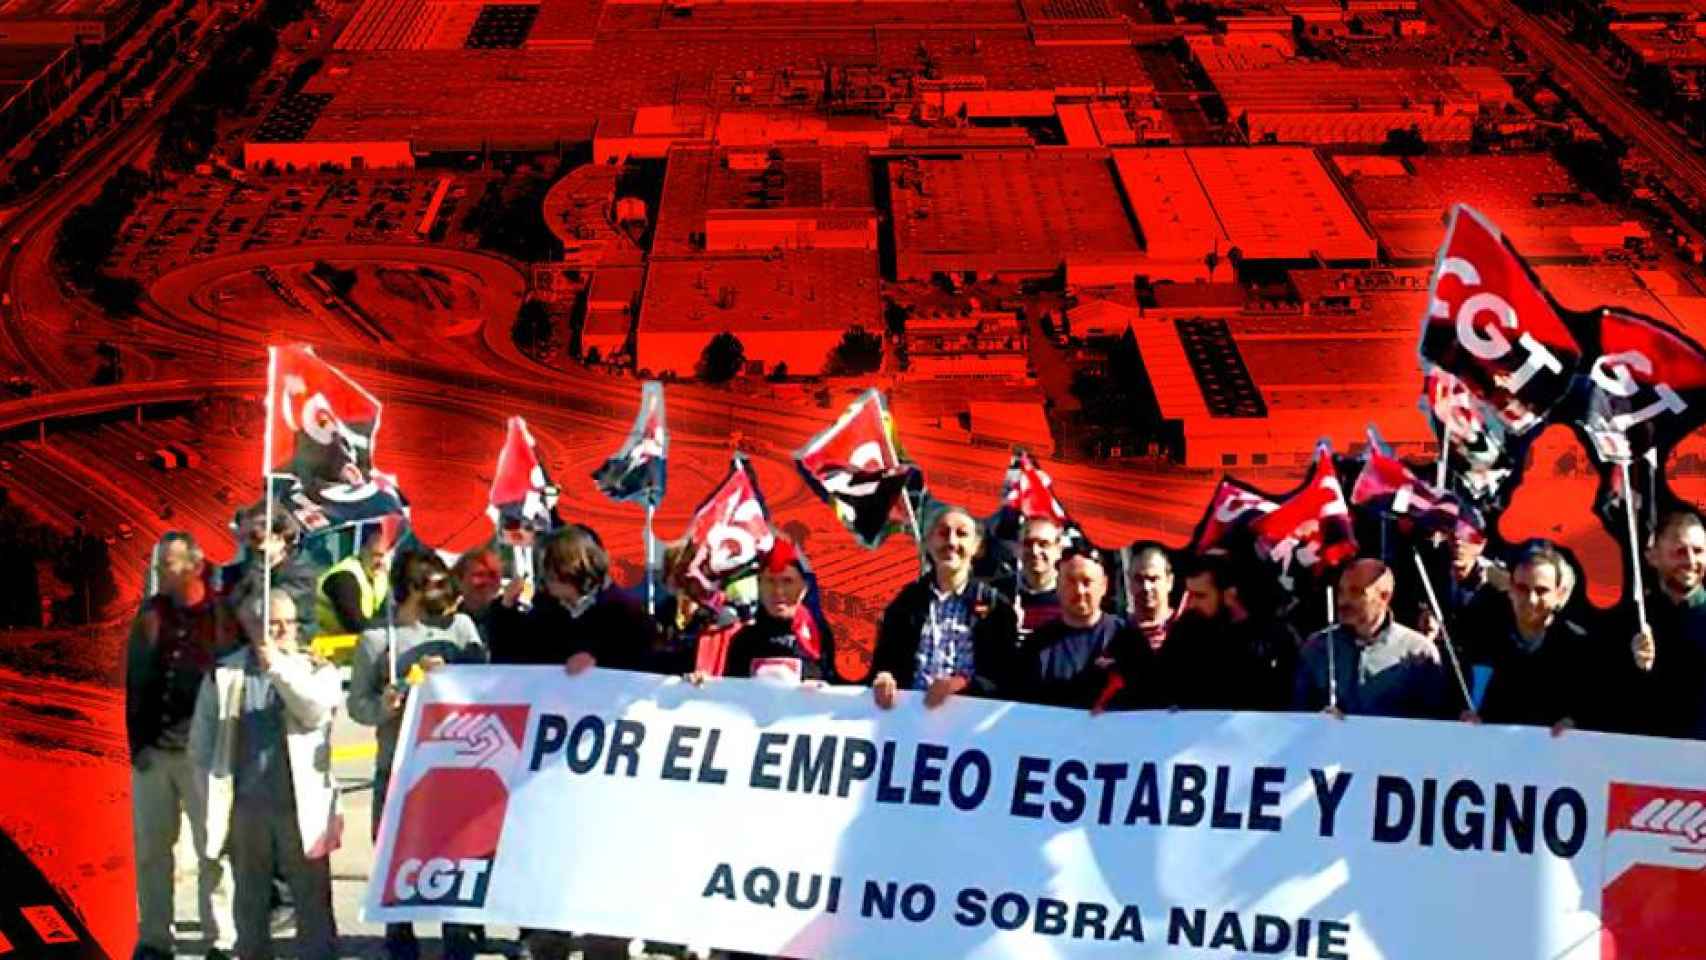 Una manifestación organizada por la CGT a consecuencia de un ERE / FOTOMONTAJE DE CG